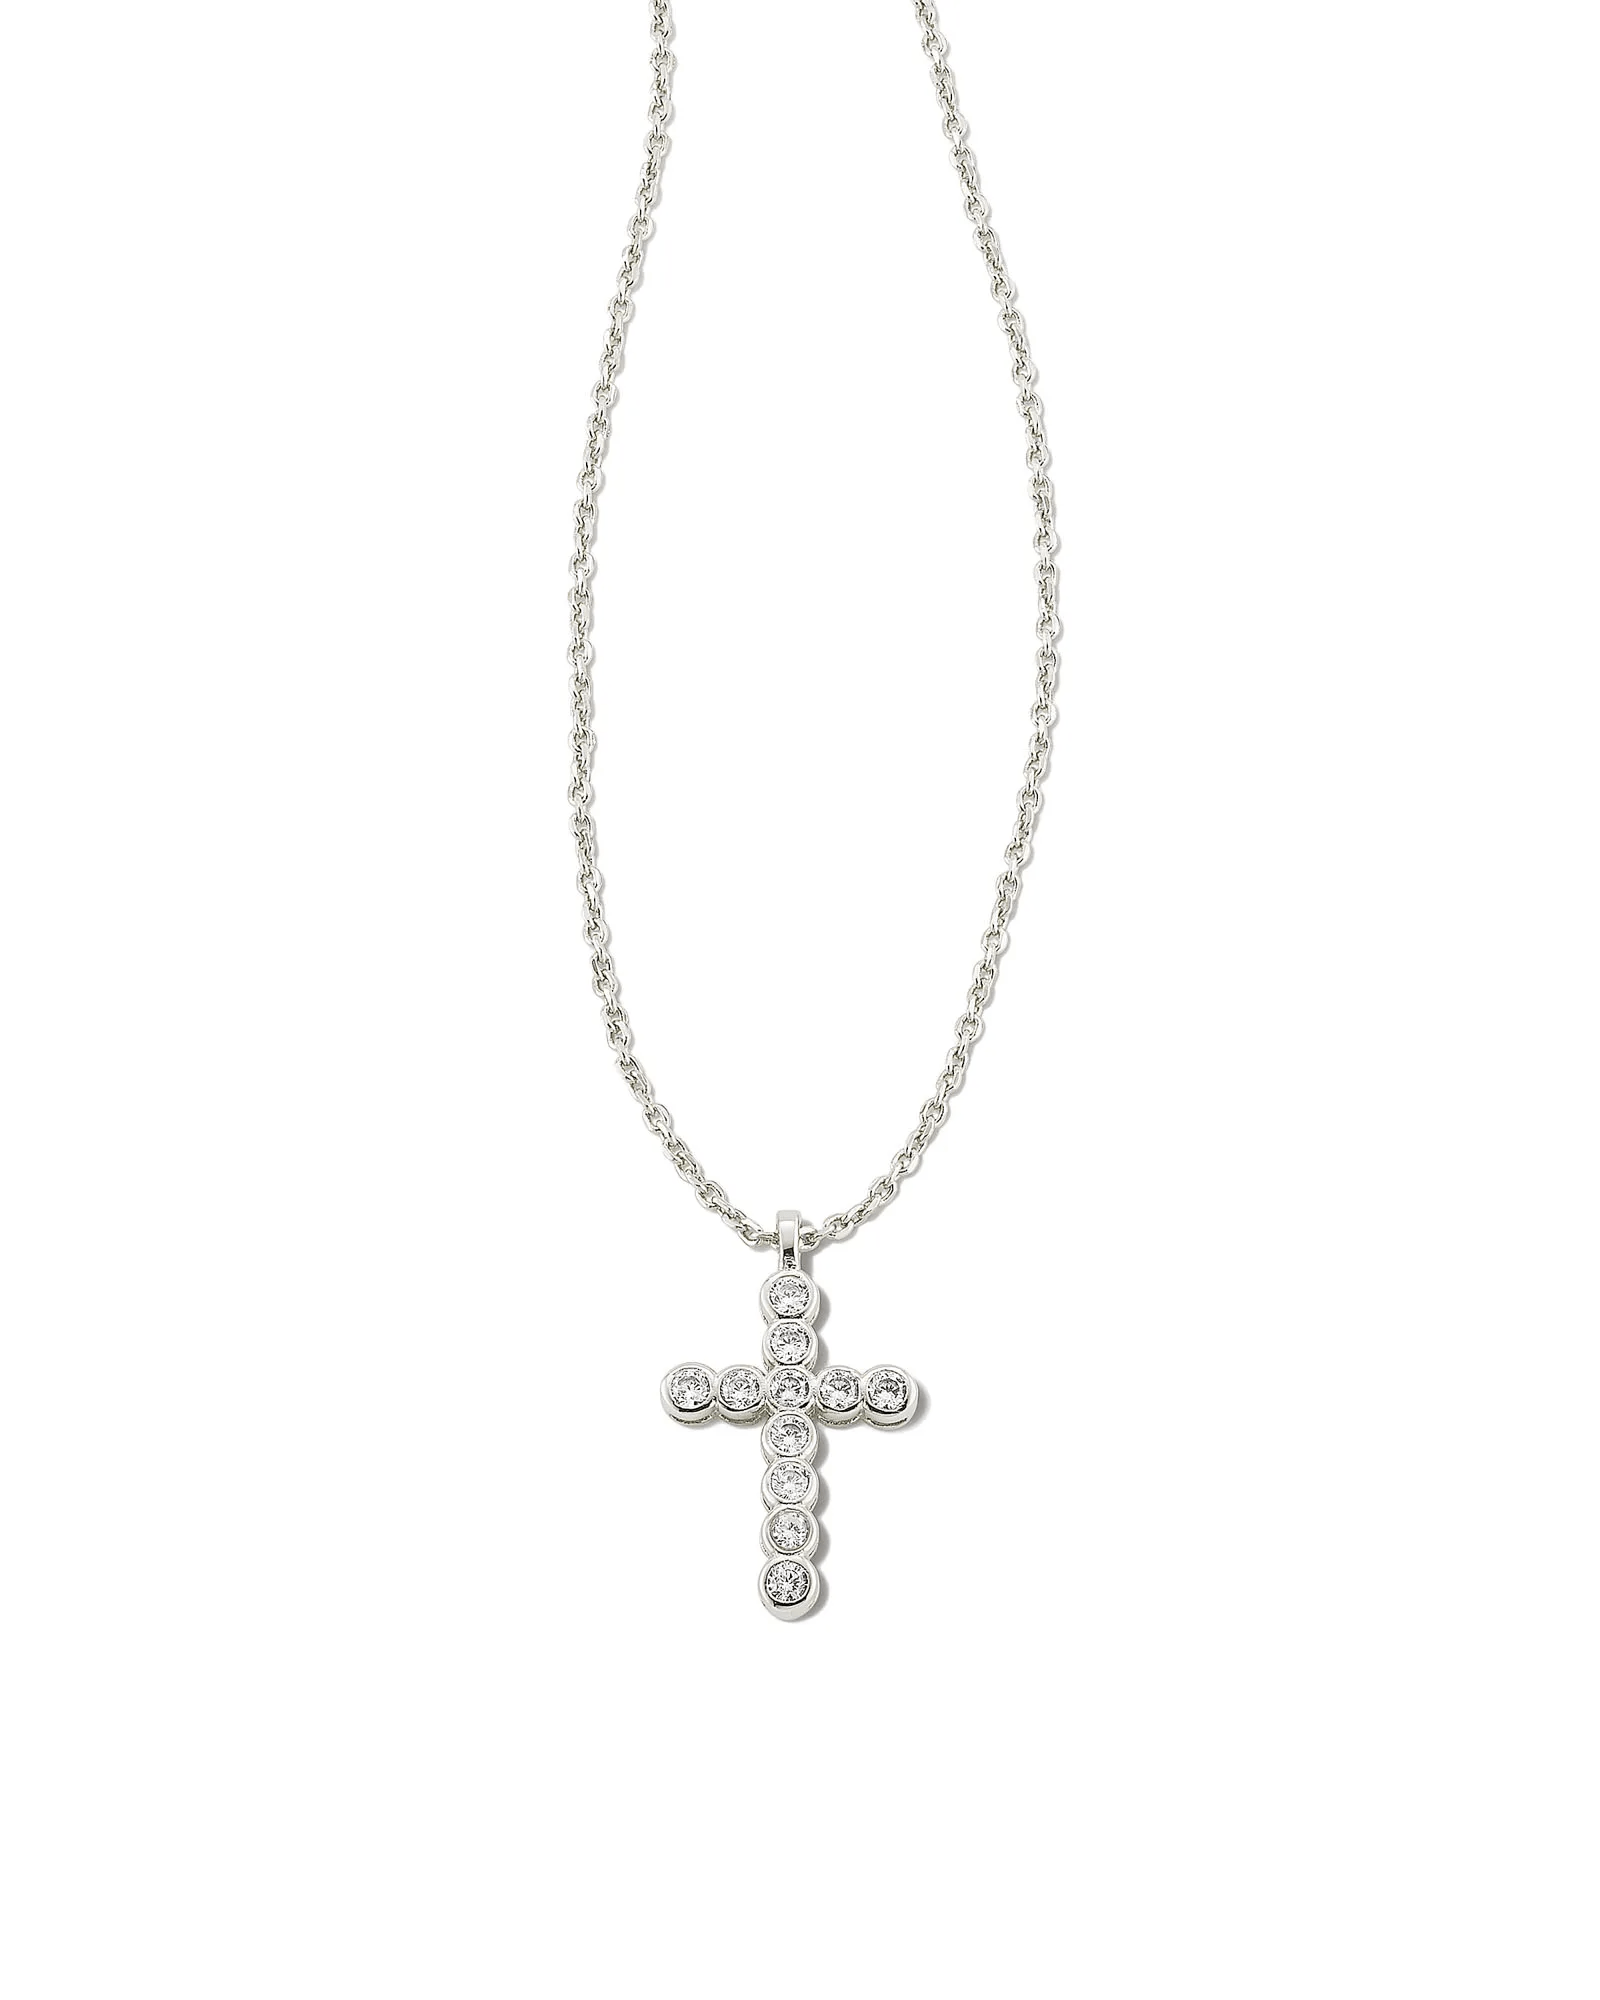 Kendra Scott Women - Accessories - Earrings Cross Silver Pendant Necklace in White Crystal | Kendra Scott